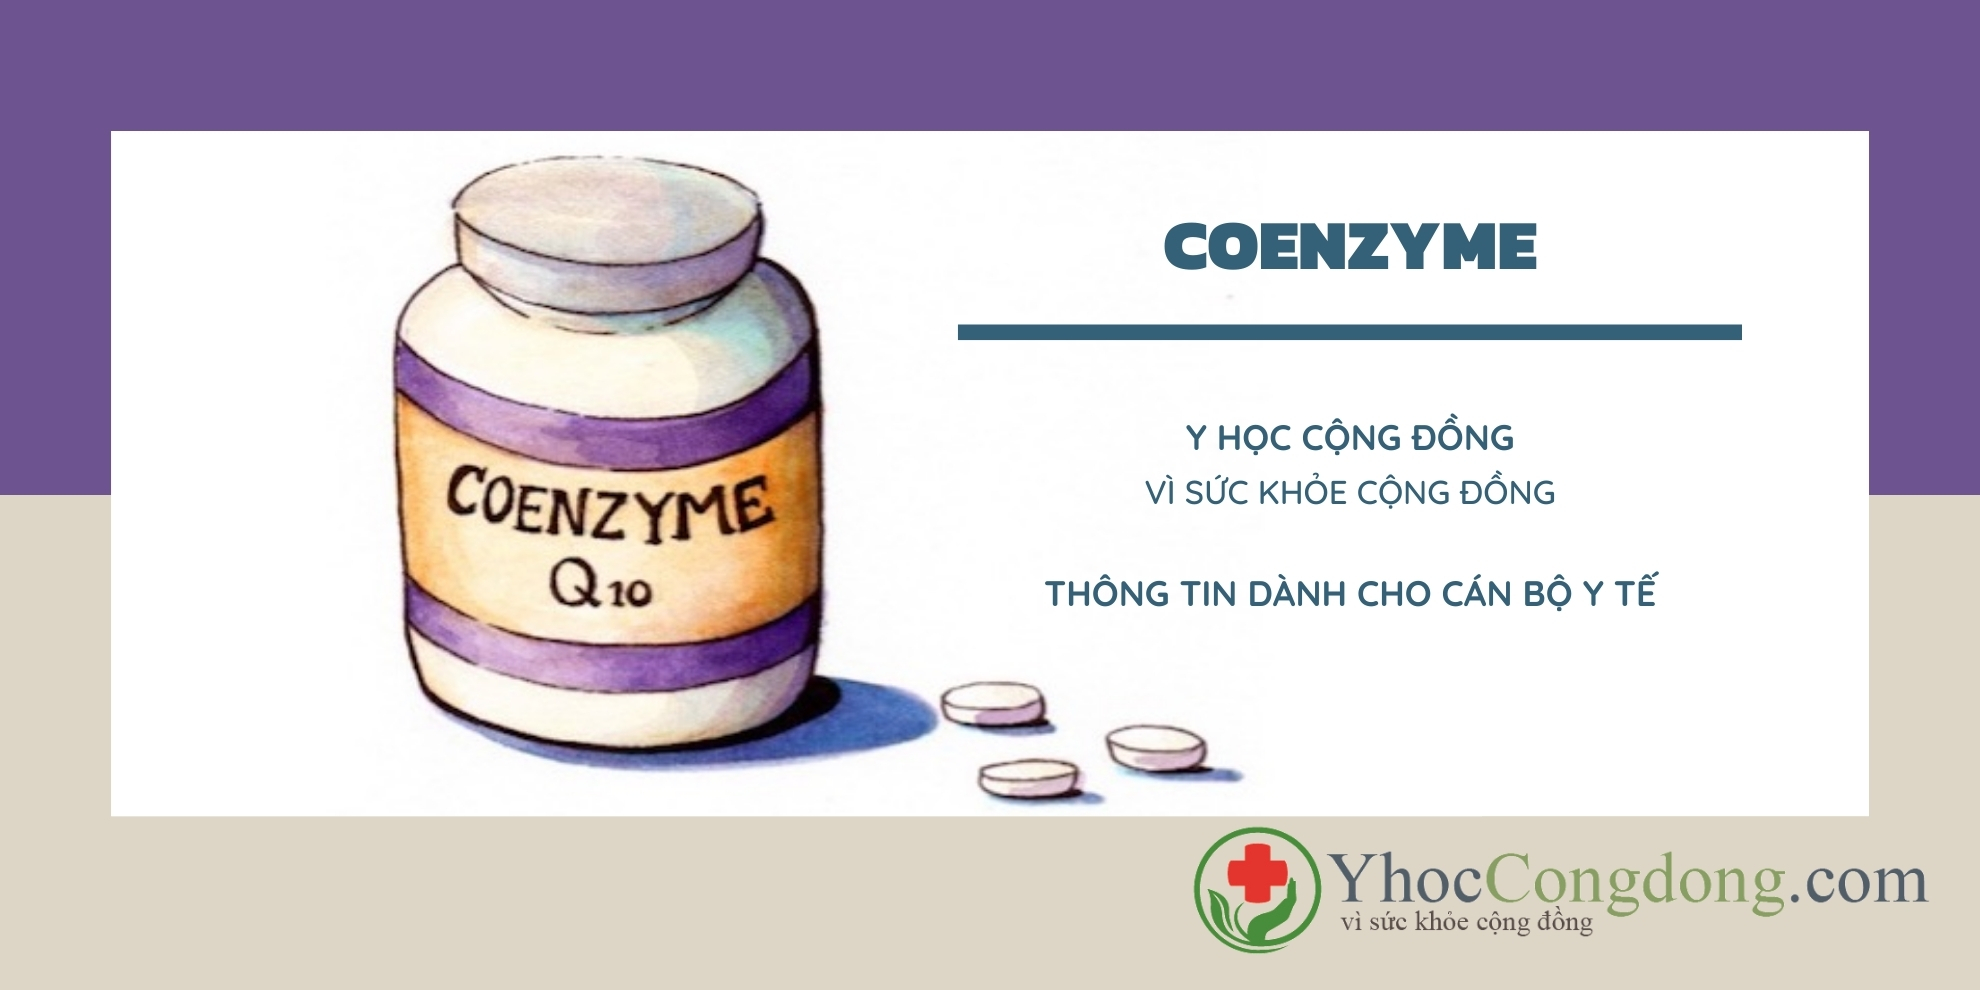 Coenzyme Q10 - Thông tin dành cho cán bộ y tế